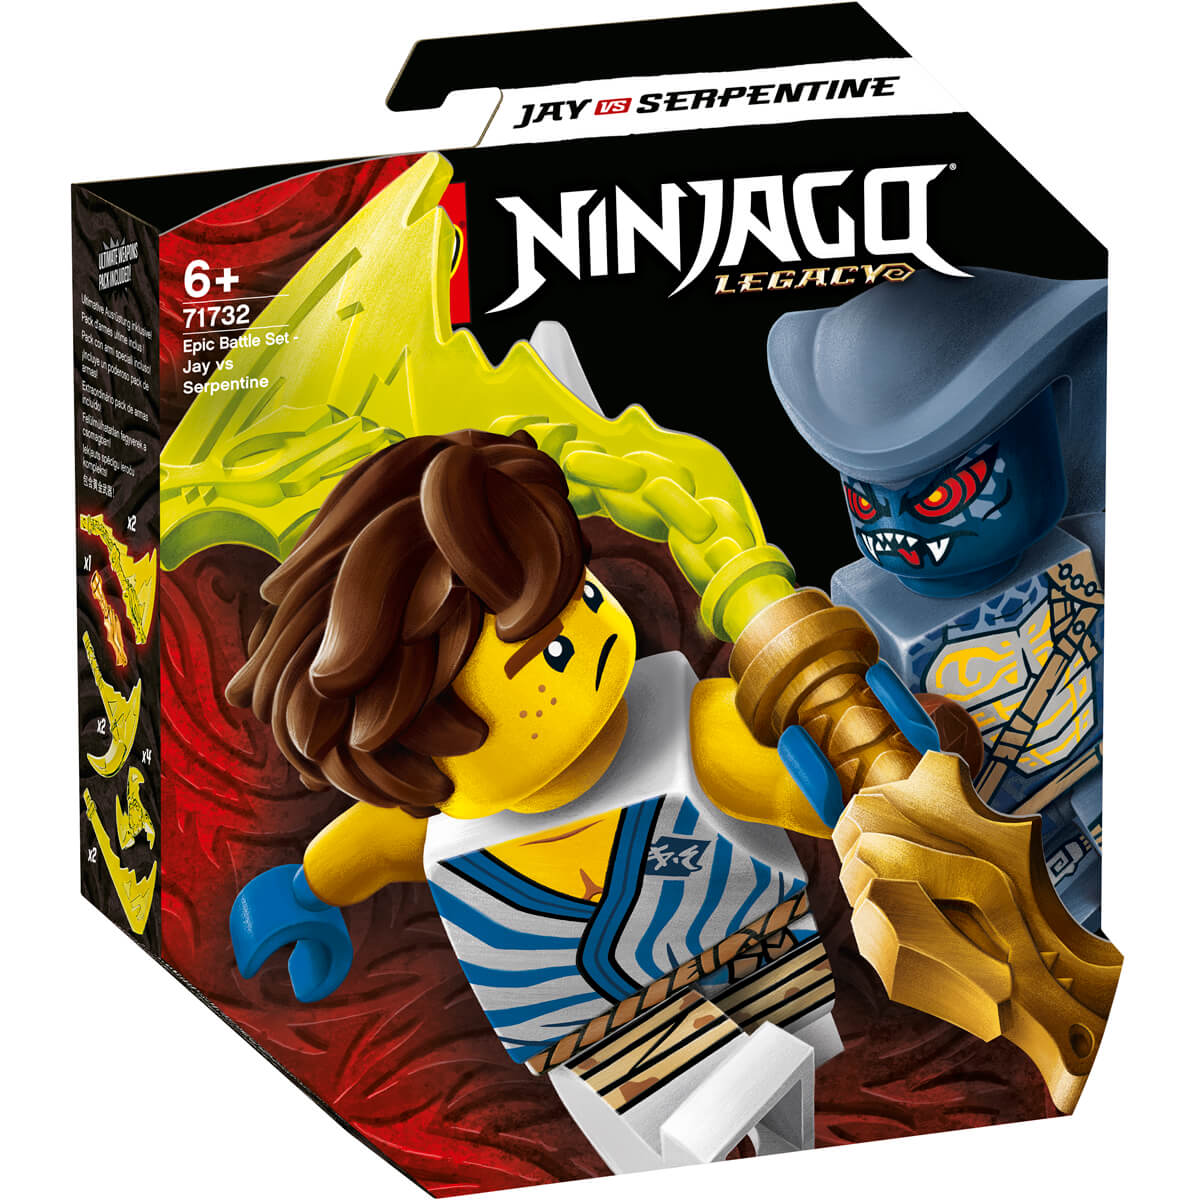 ΠΑΙΔΙ | Παιχνίδια | LEGO | NINJAGO 71732 Epic Battle Set - Jay Vs. Serpentine